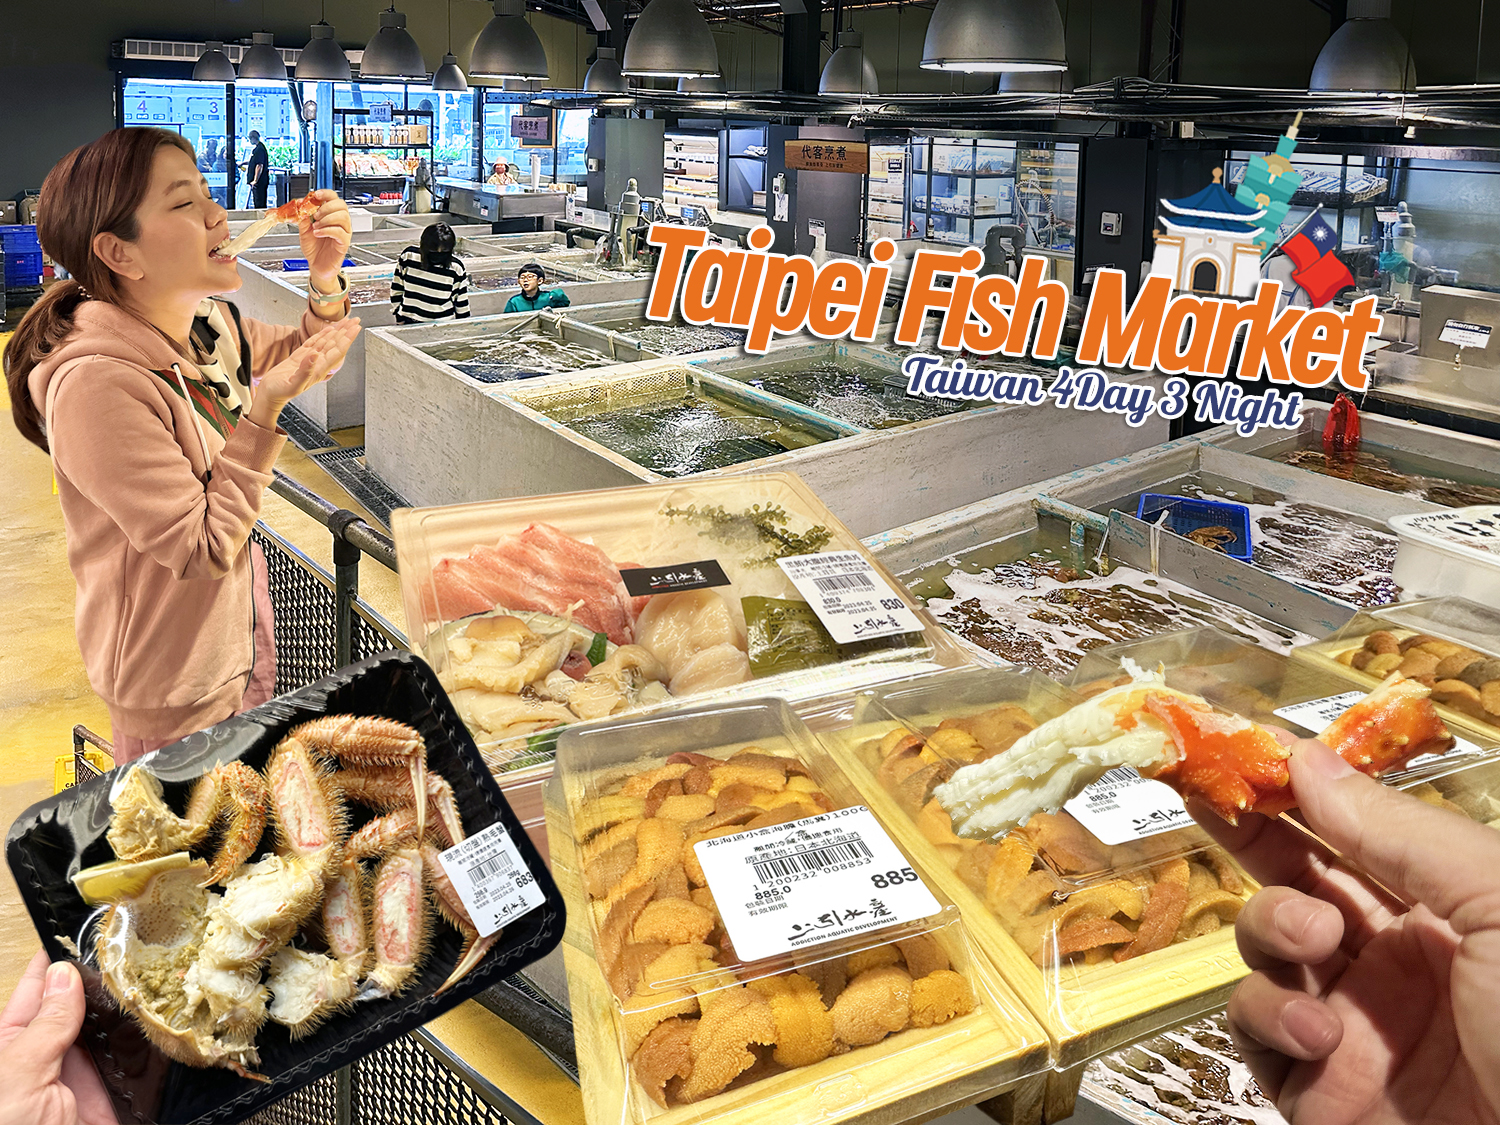 เที่ยวไต้หวัน 4 วัน 3 คืน ตามรอยเค้า… กินมื้อเที่ยง Taipei Fish Market กินอะไรดี ถูกกว่าไทย สดเหมือนที่ญี่ปุ่นมั๊ย ไปดูกัน…